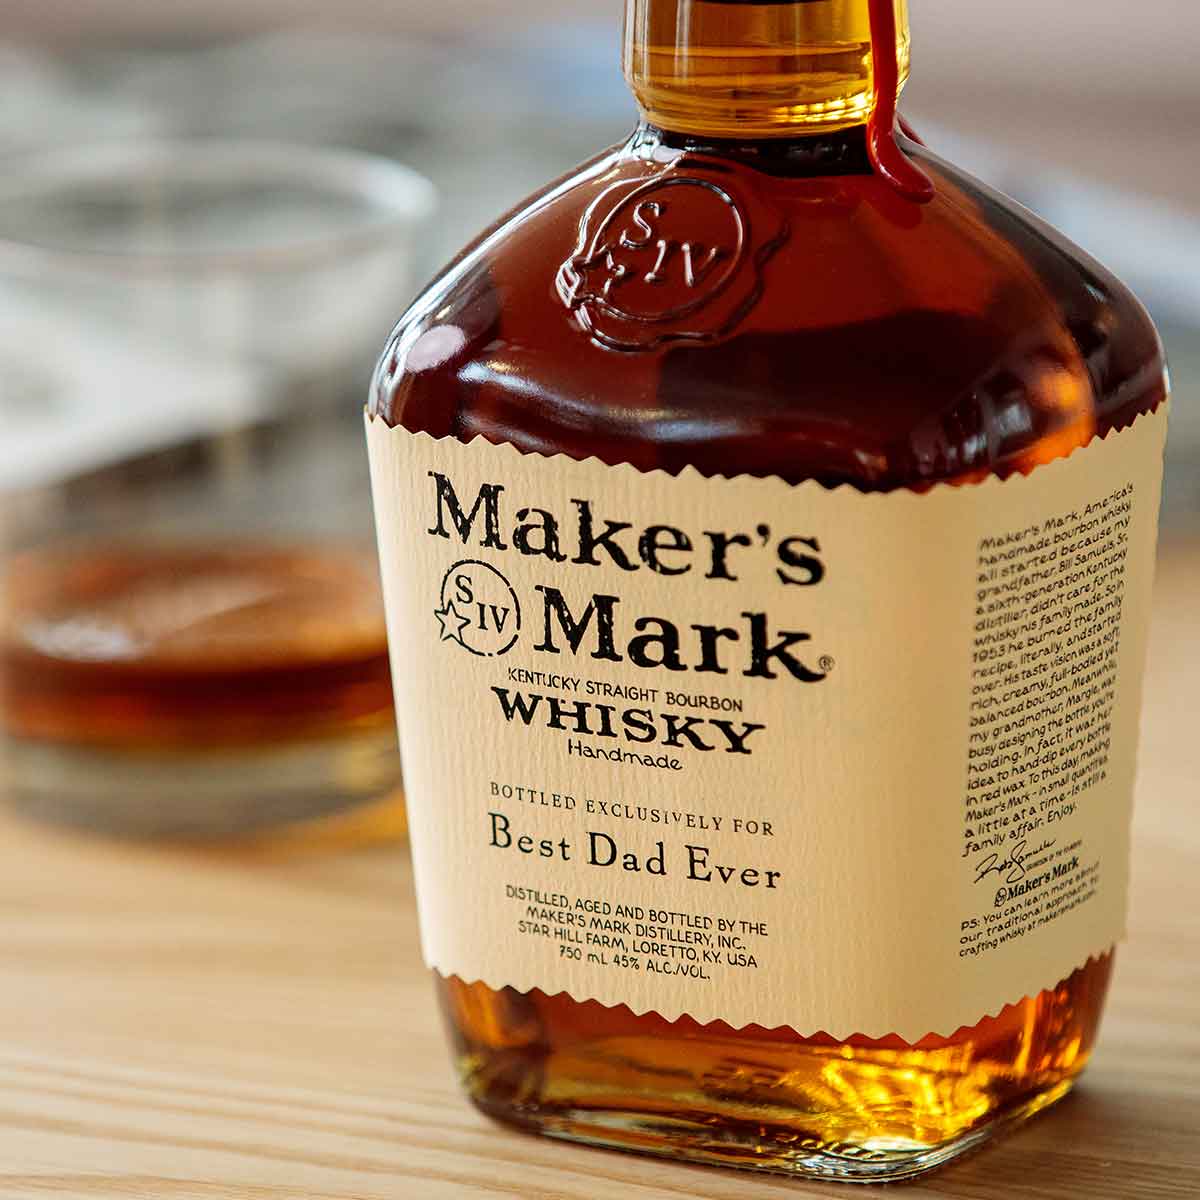 Maker's Mark Bourbon Whisky, Buy Maker's Mark